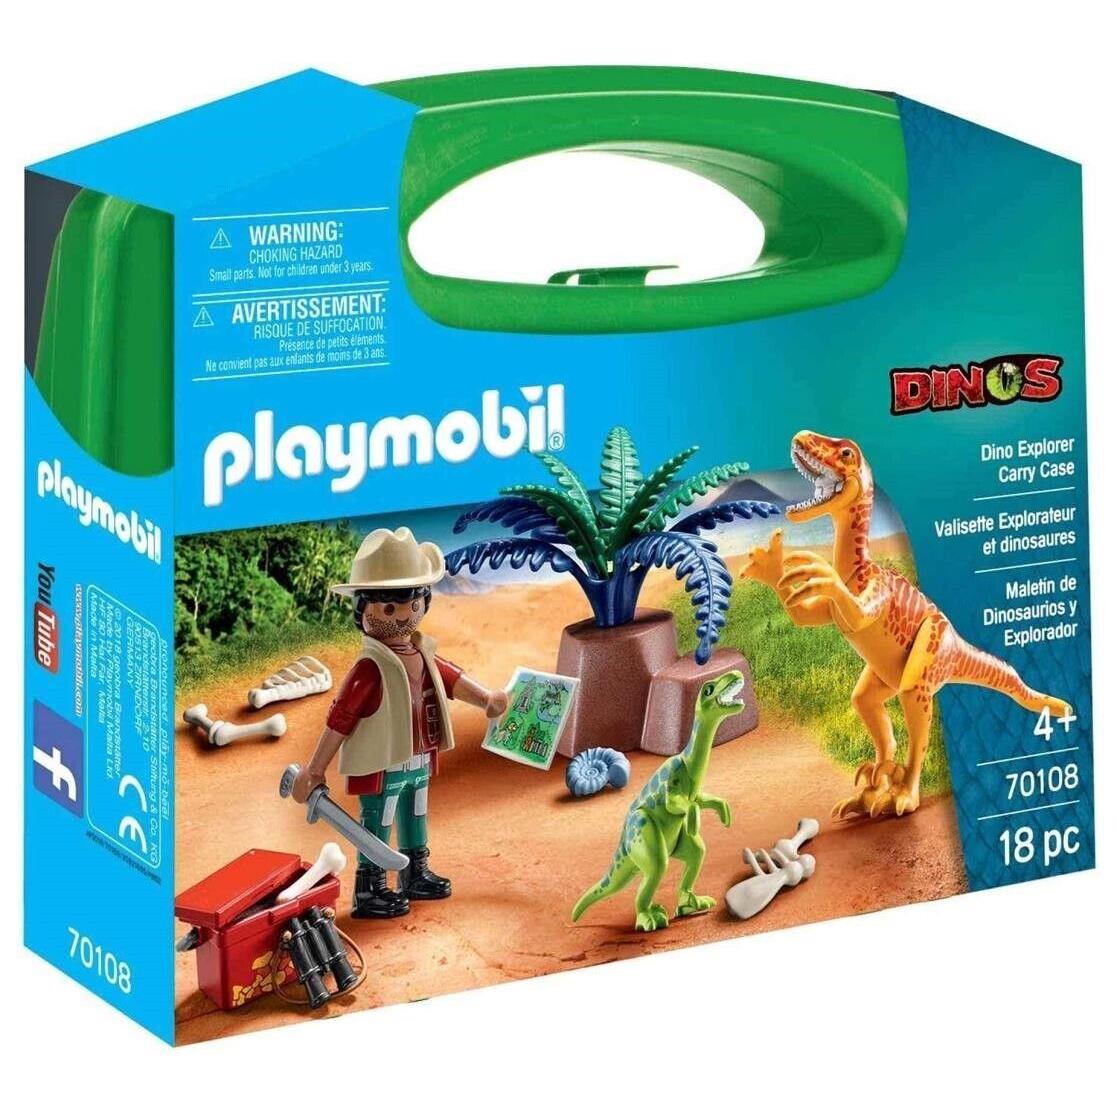 Playmobil Dino Explorer Carry Case Building Set 70108